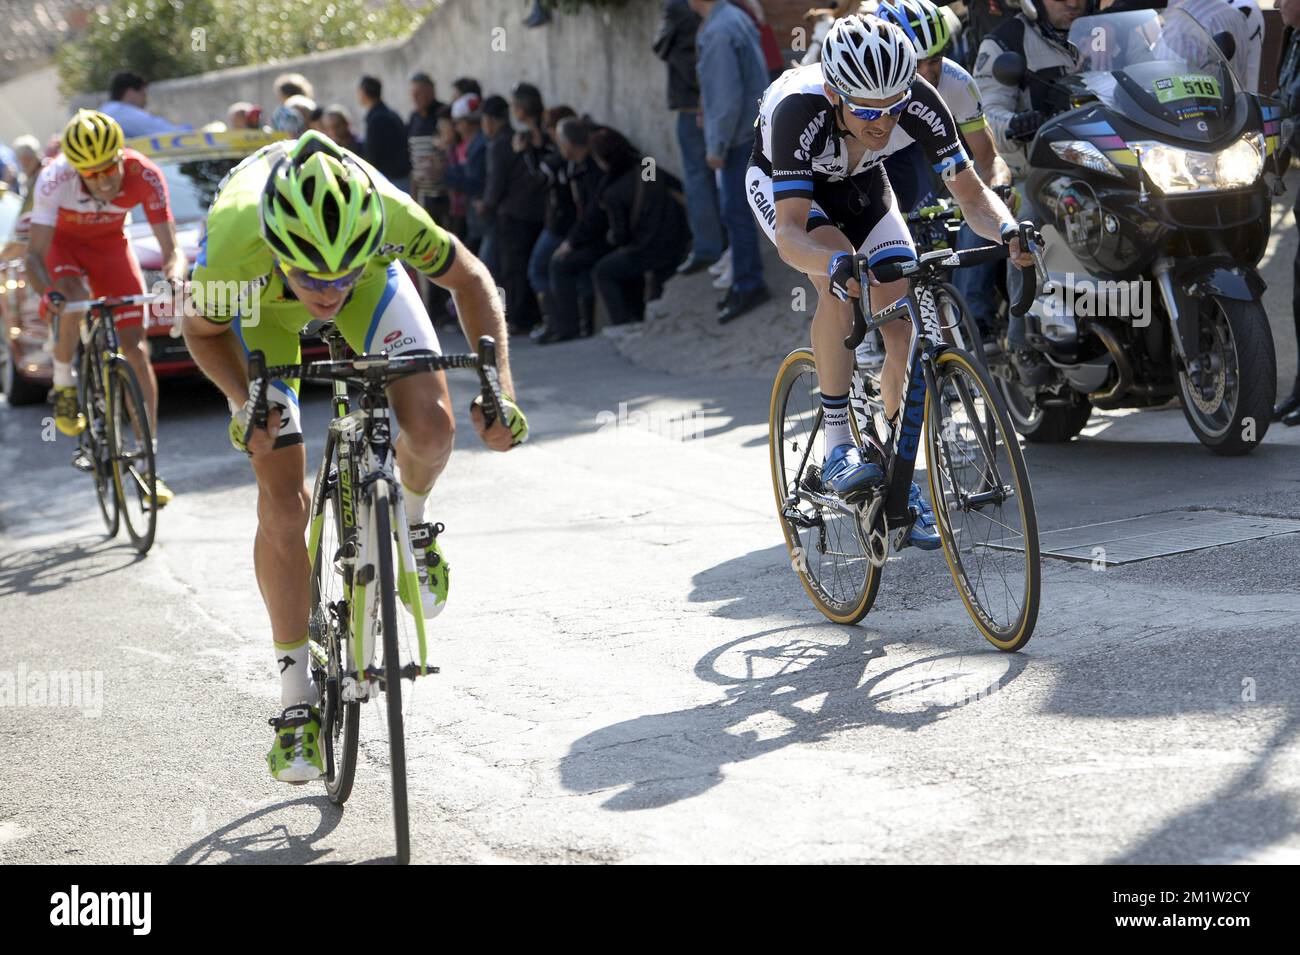 20140314 - FAYENCE, FRANCE: Italien Damiano Caruso de Cannondale Pro Cycling  et belge Dries Devenyns de Team Giant-Shimano photographié pendant la  sixième étape de l'édition 72nd de Paris-Nice course cycliste, à 221,5